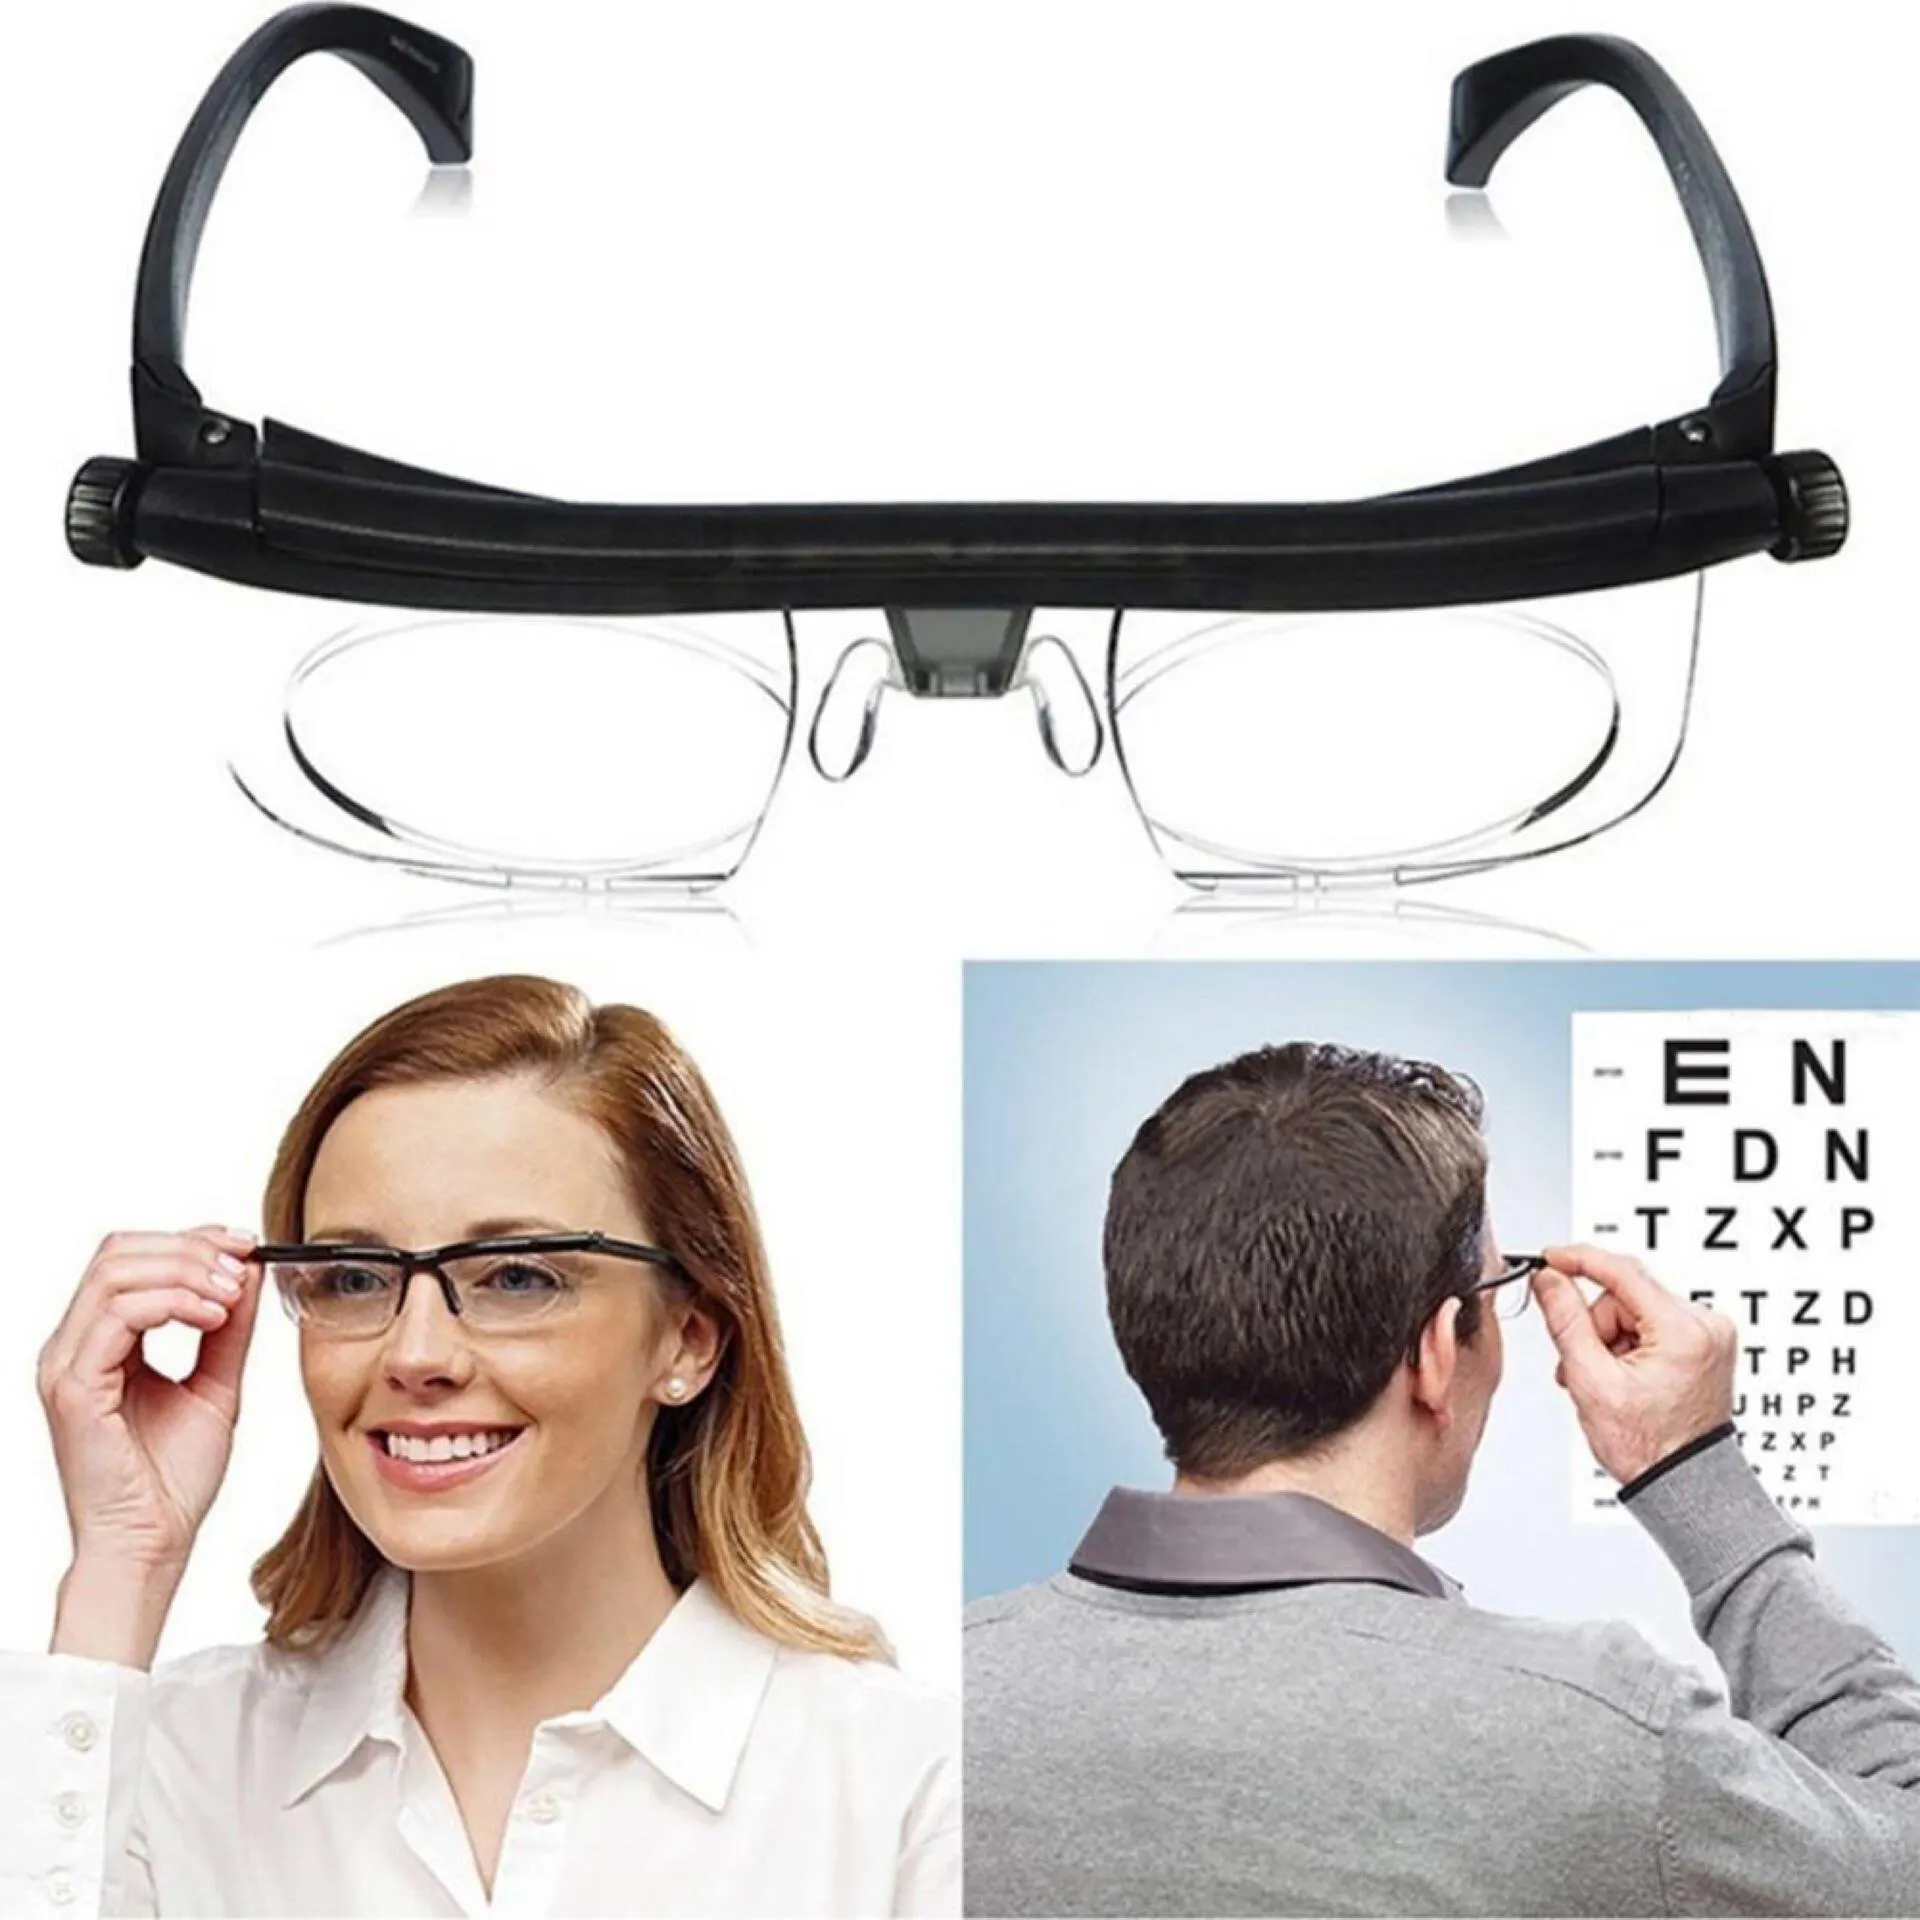 핫 세일 인기있는 조정 가능한 시력 초점 TR90 근시 안경-4D ~ + 6D 안경 독서 안경